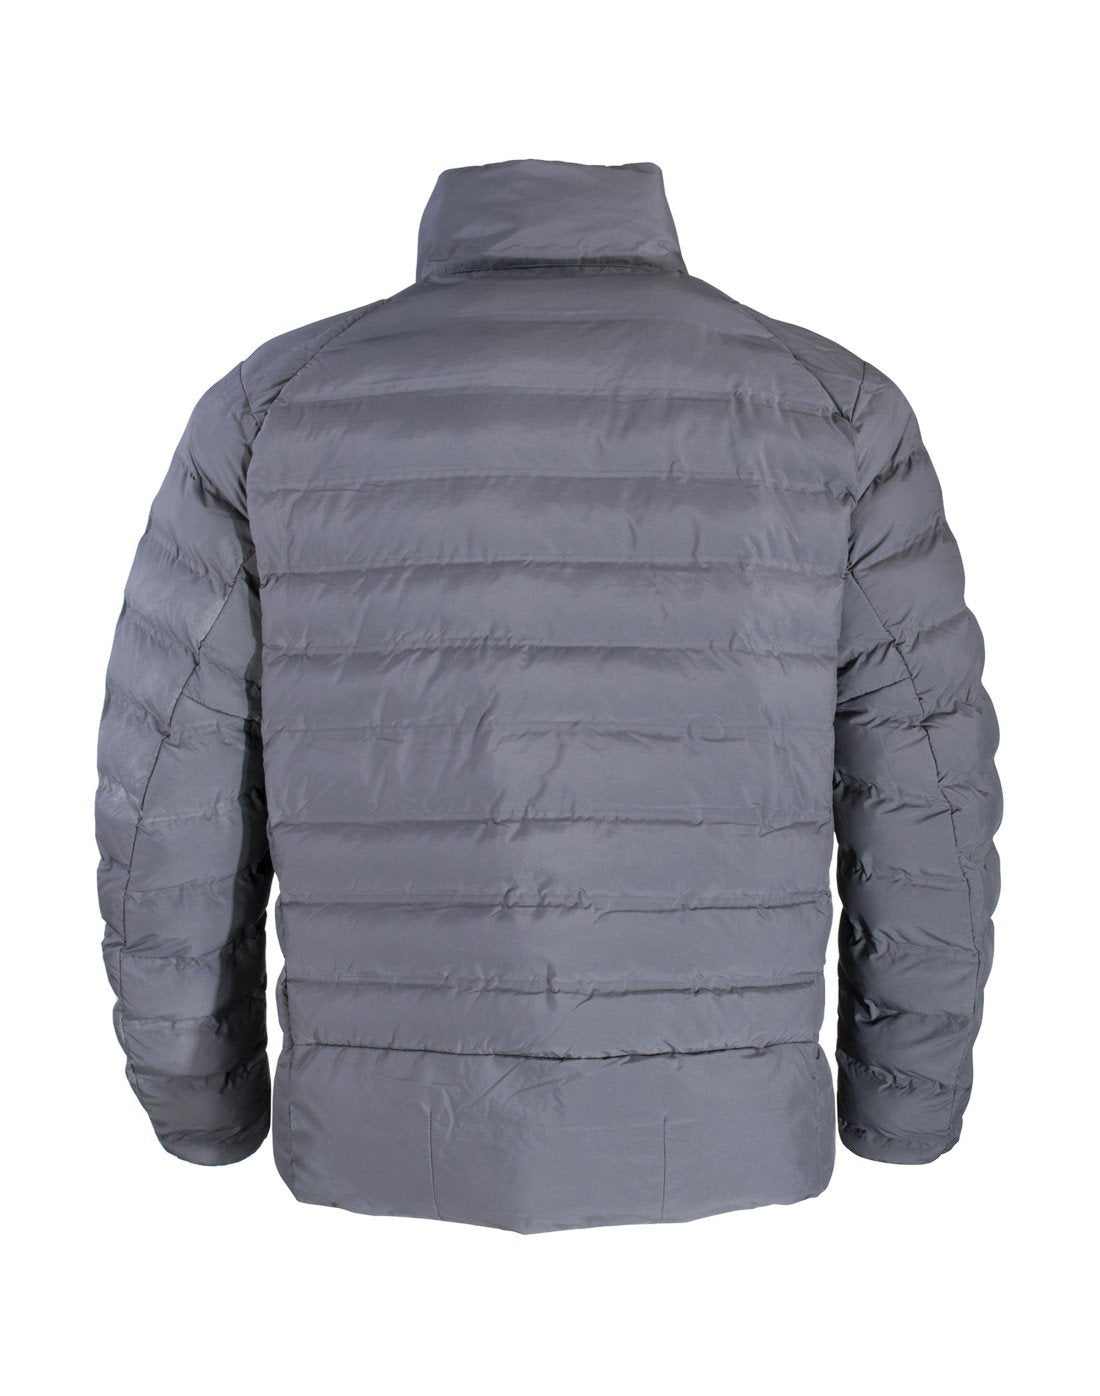 Parka Pukem térmica para hombre de TEAMGRAFF, ideal para mantenerte cálido y protegido en condiciones frías extremas